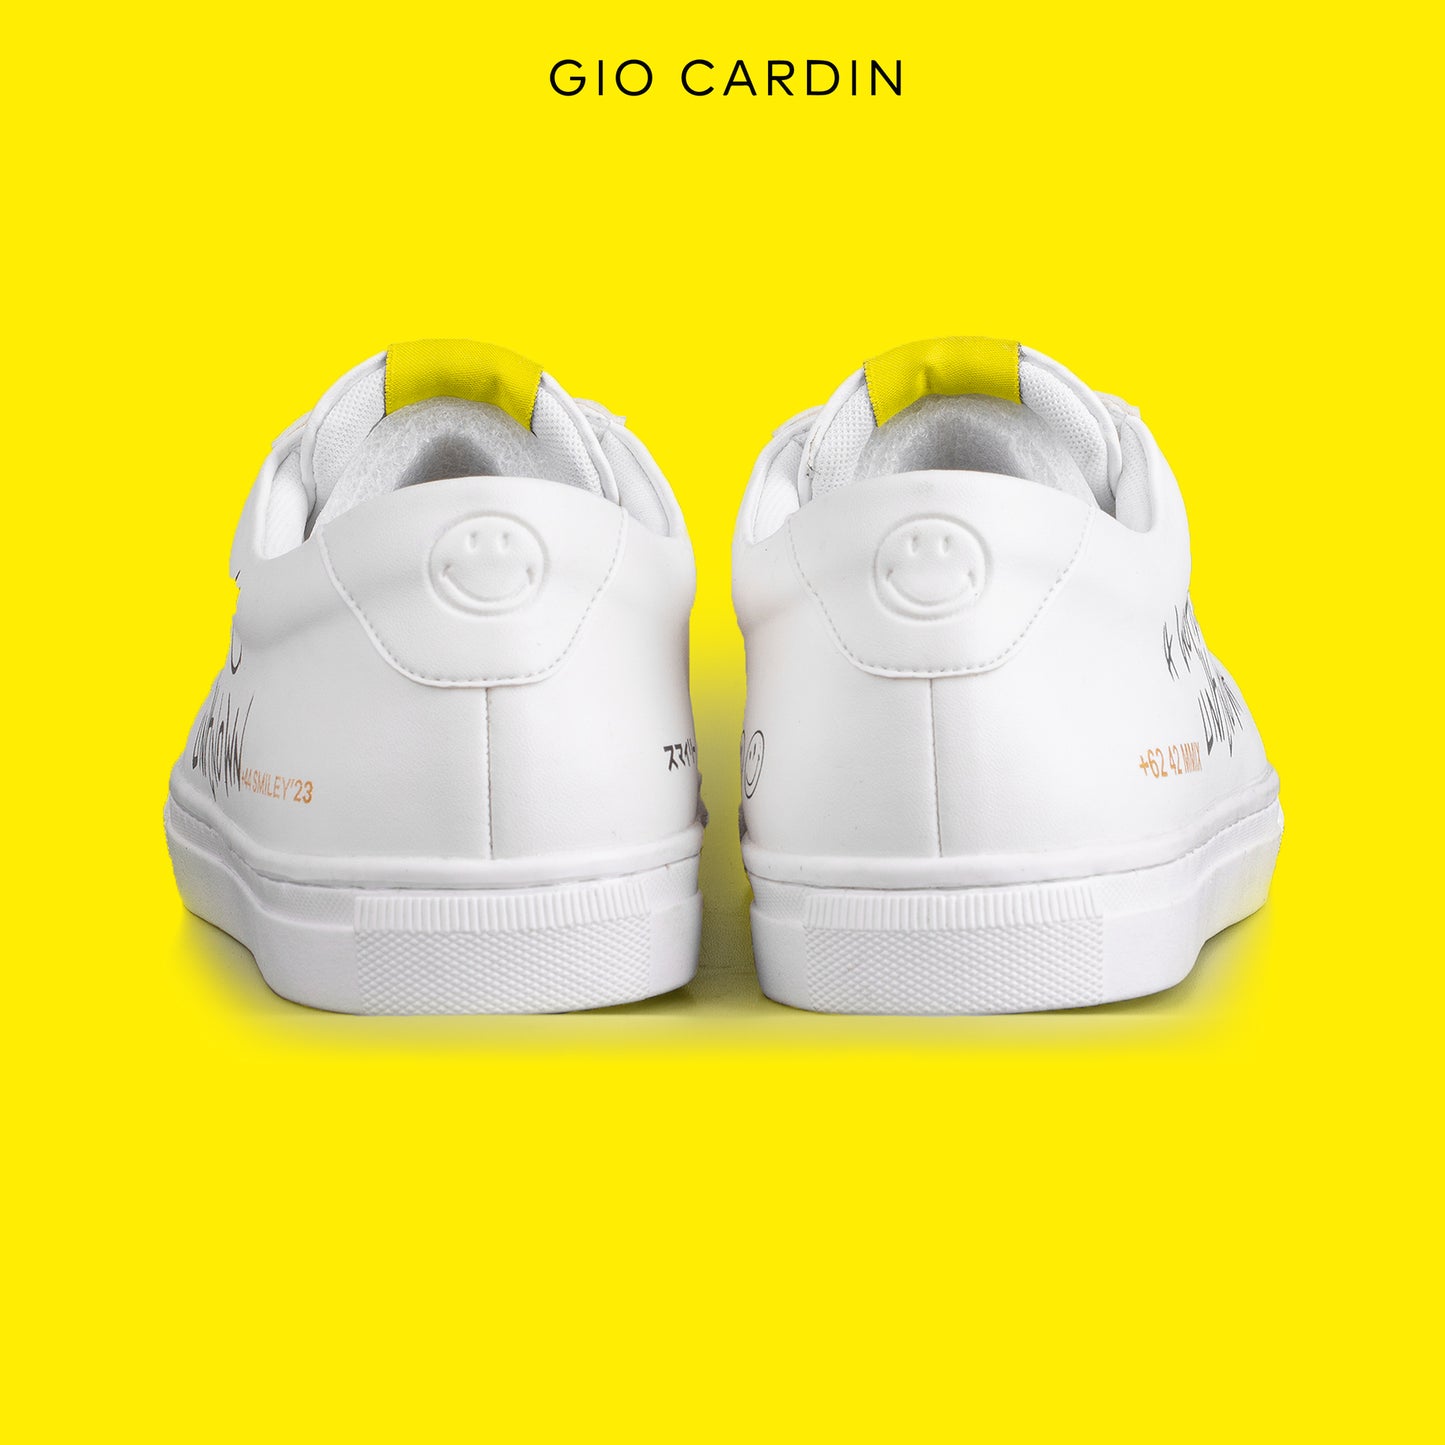 GIO CARDIN x SMILEY - ARGUS - TRIPLE WHITE